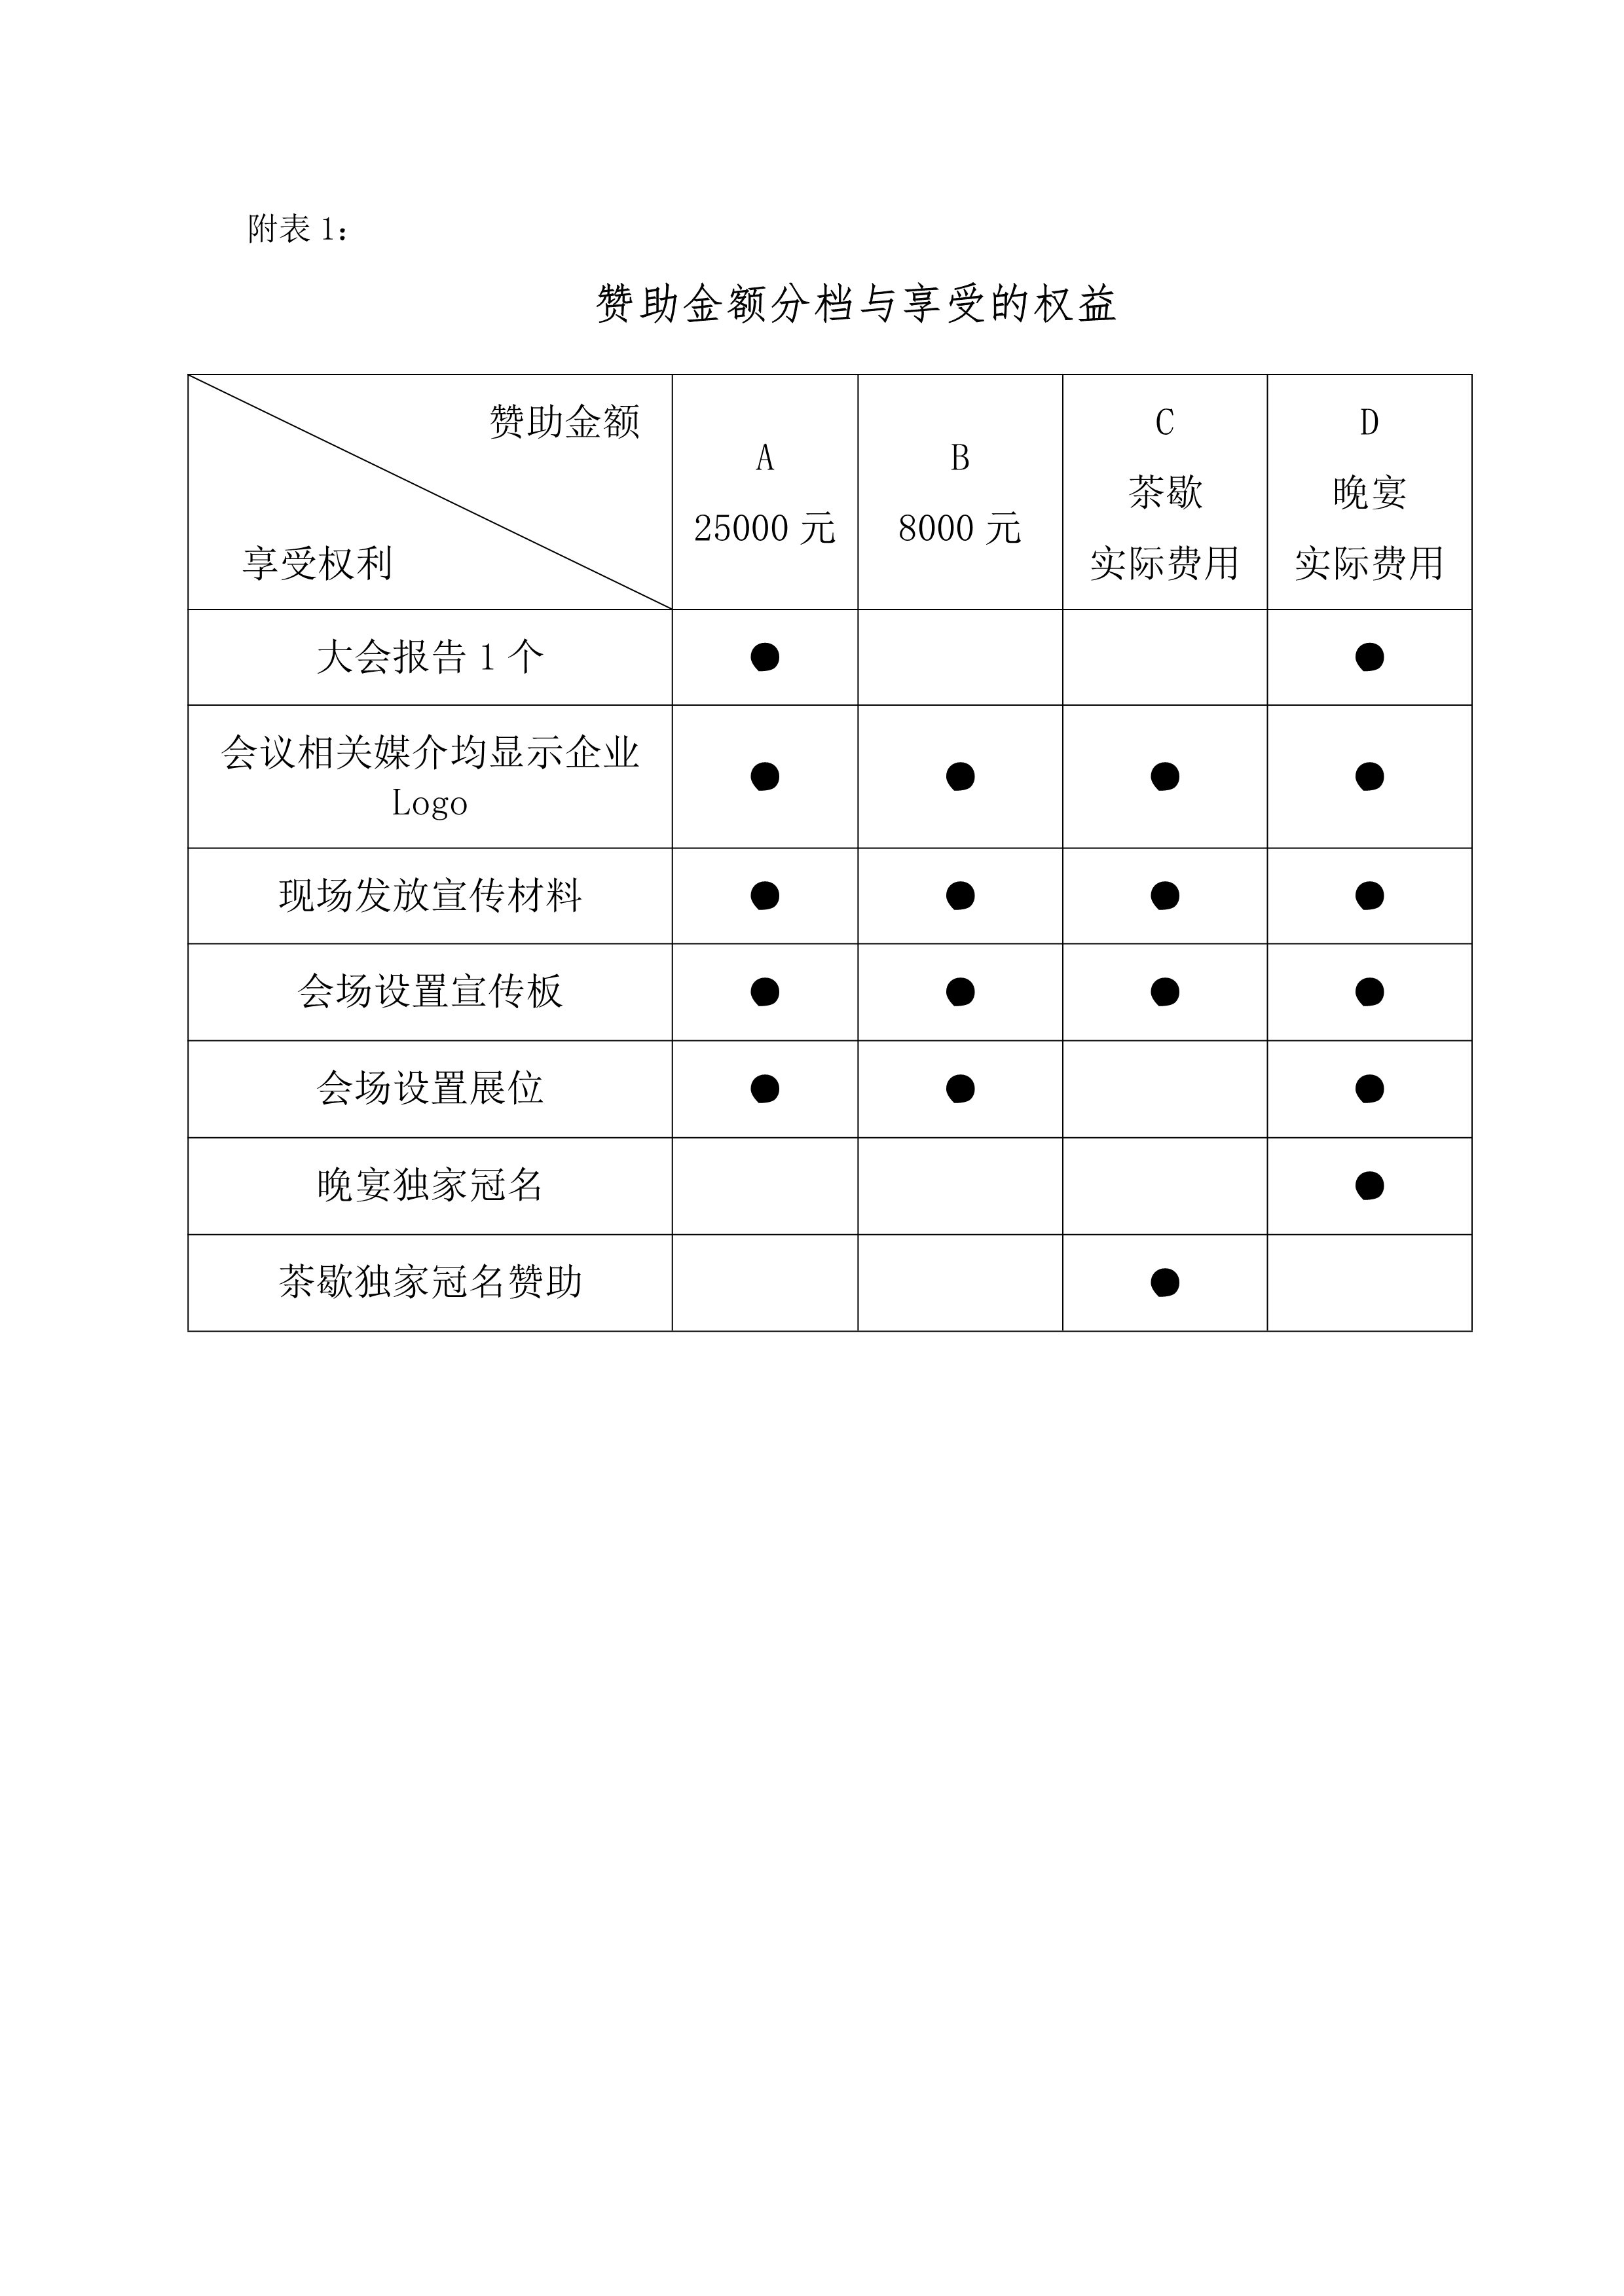 附件1 第四届四川省暖通空调与制冷学术年会预通知-4